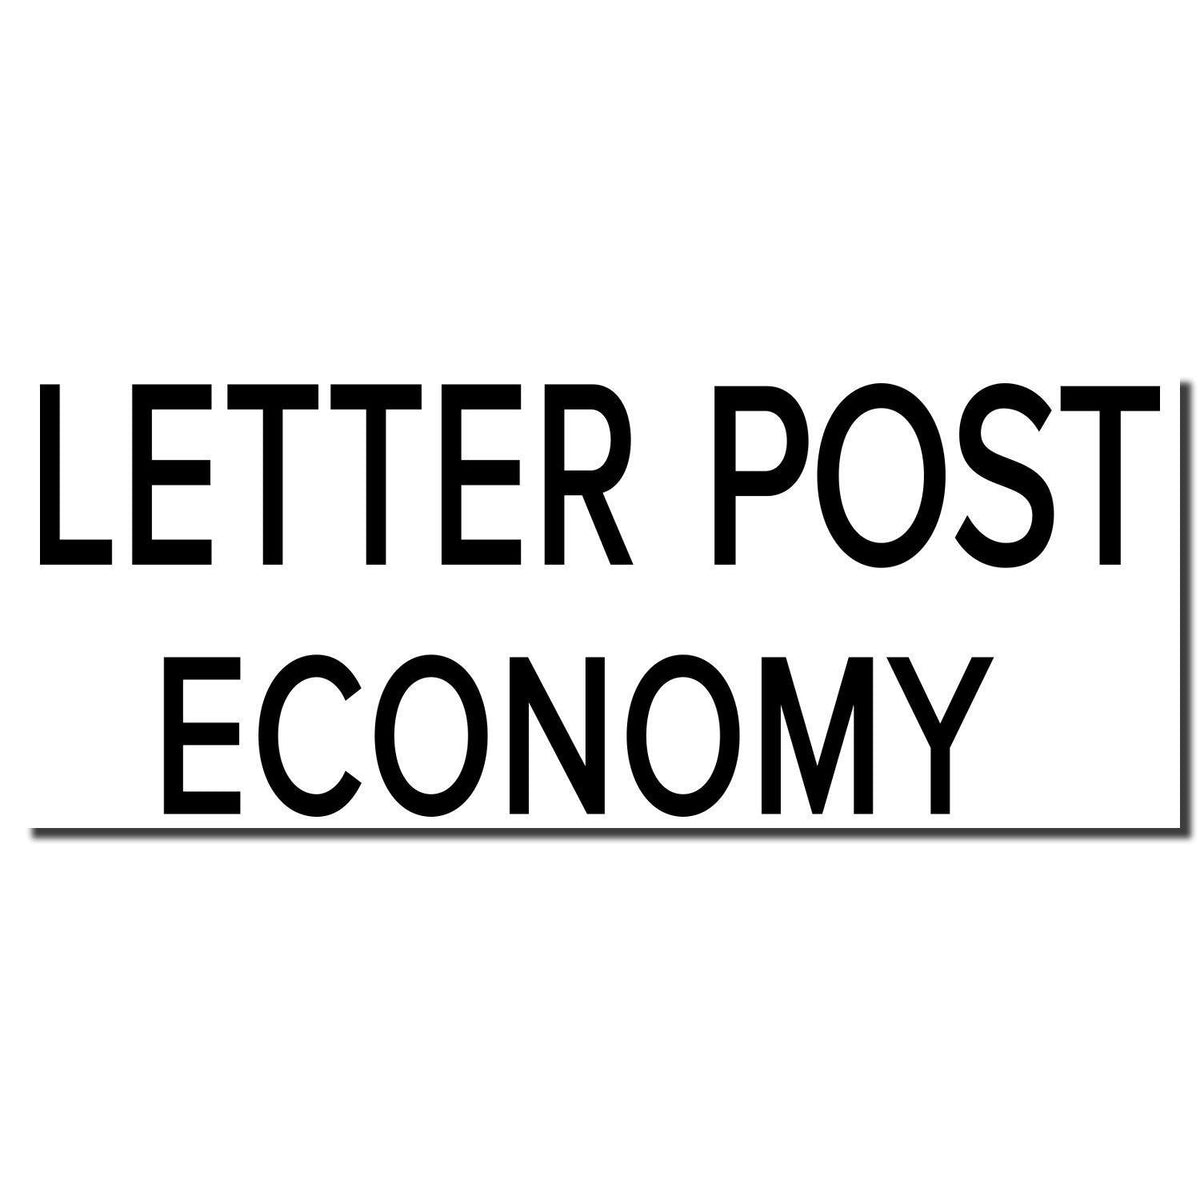 Enlarged Imprint Large Pre-Inked Letter Post Economy Stamp Sample